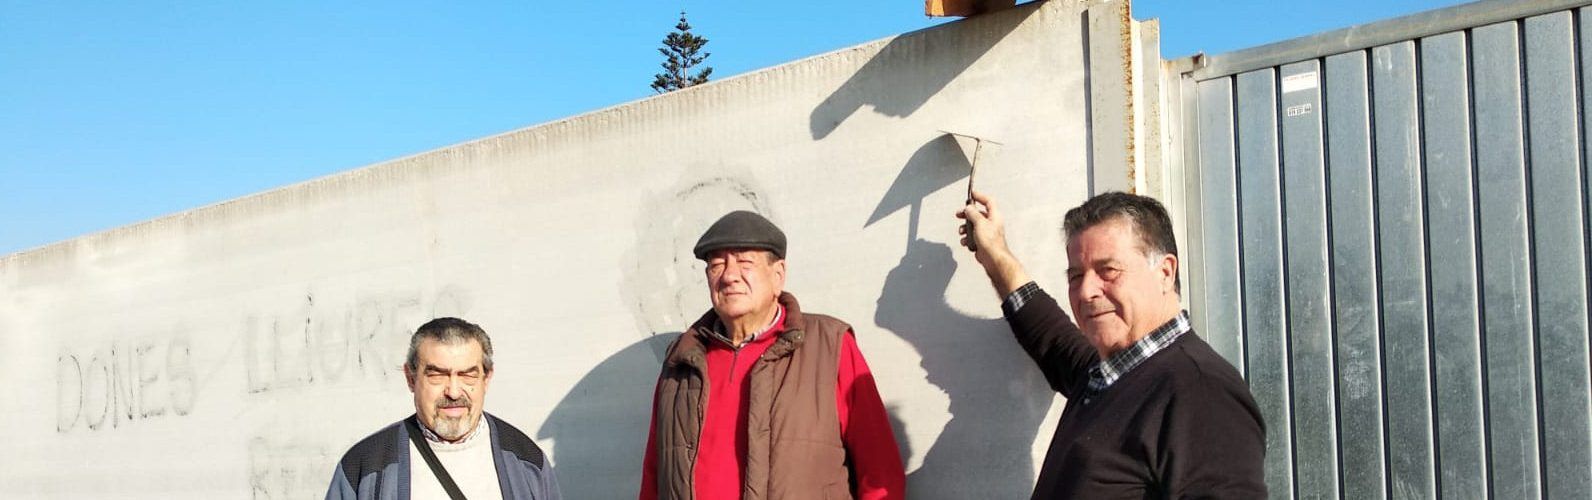 Migjorn posa la “primera teula” del CEIP Jaume I de Vinaròs